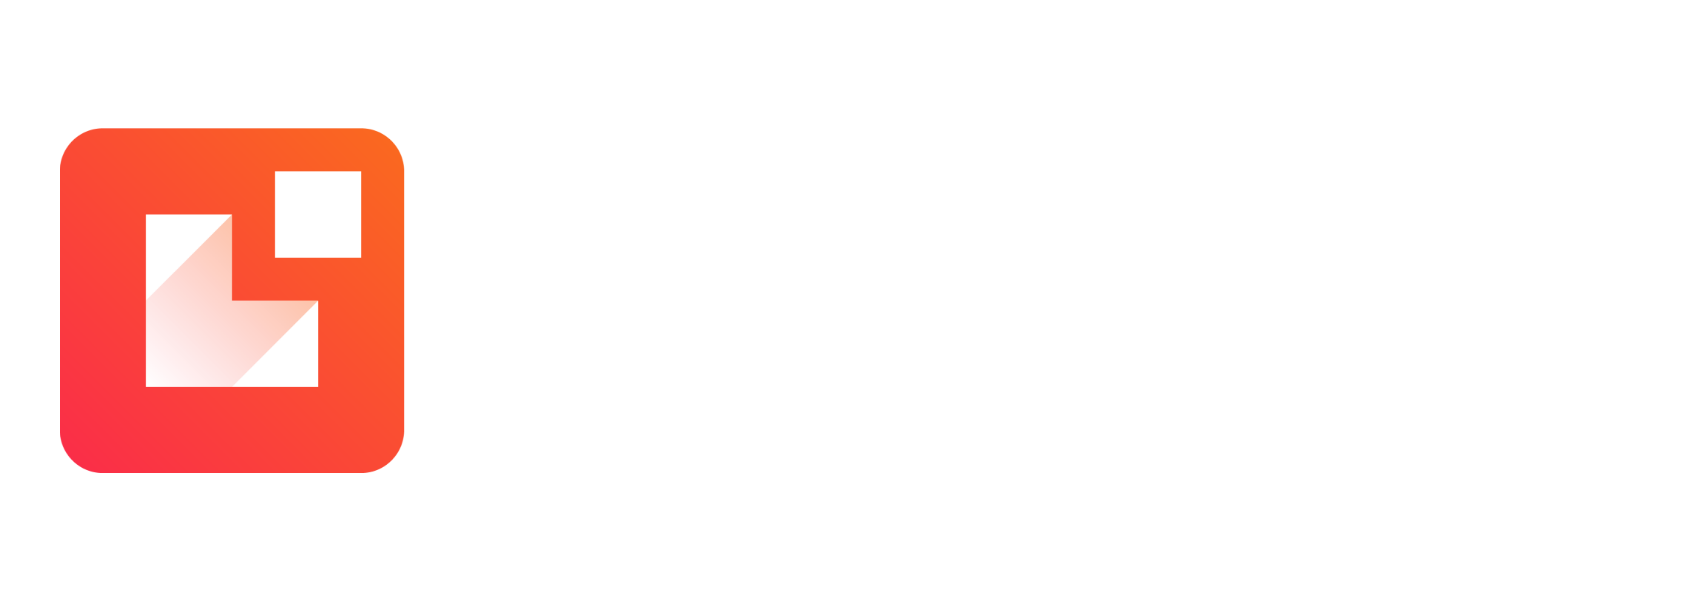 Lead info Logo-1